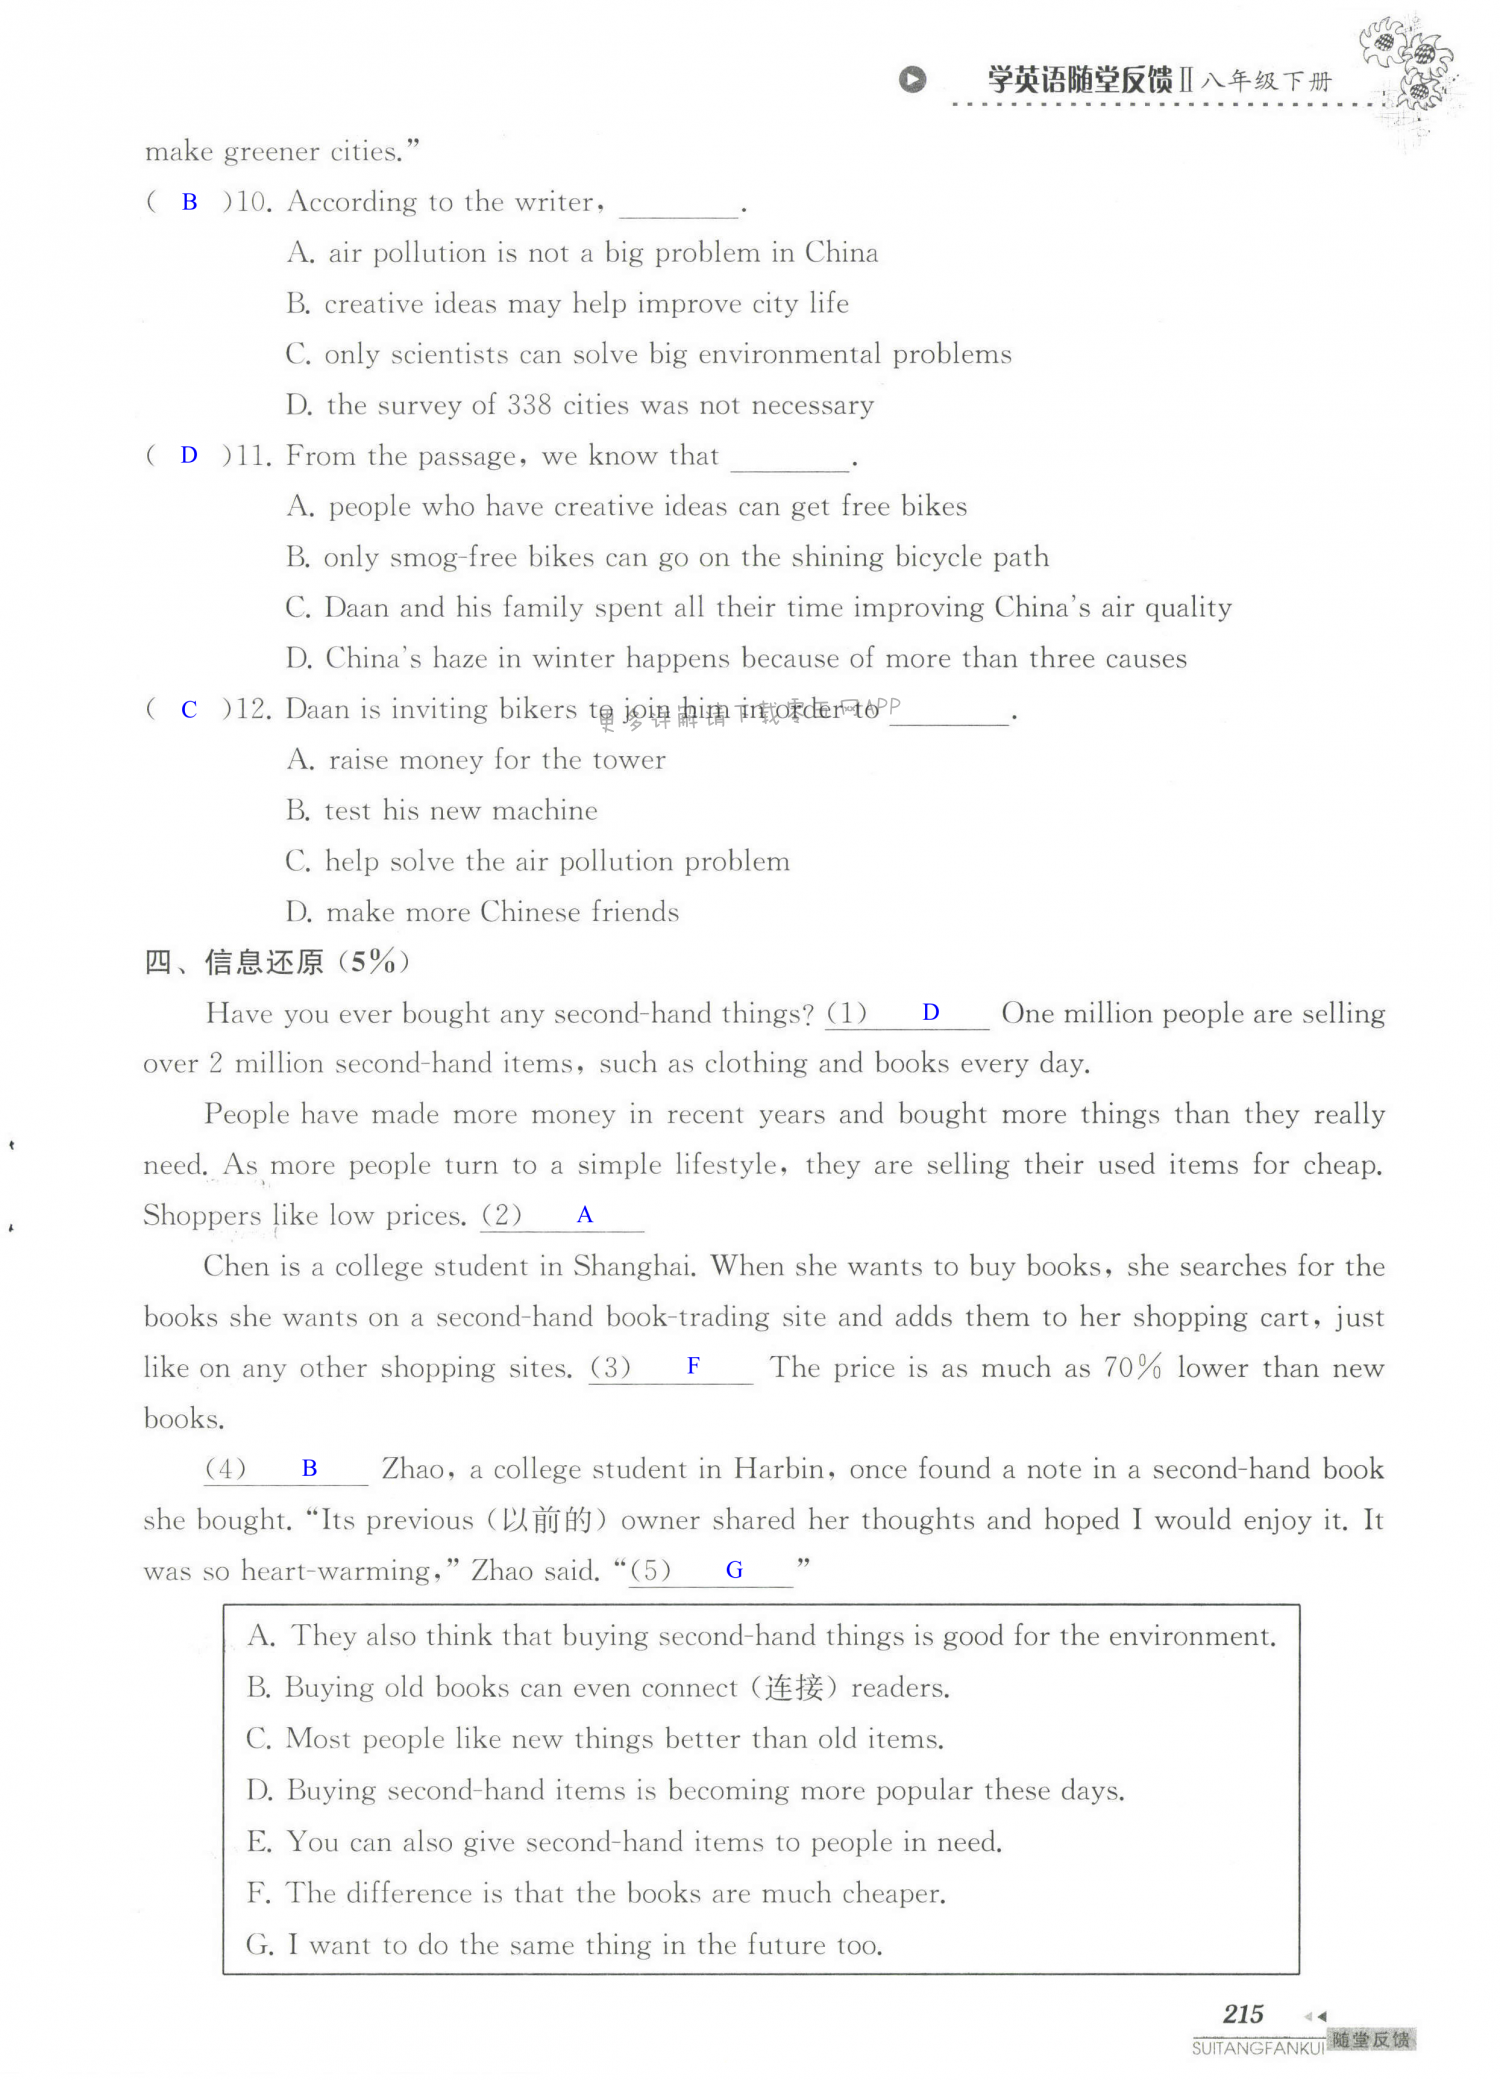 单元综合测试卷 Test for Unit 8 of 8B - 第215页